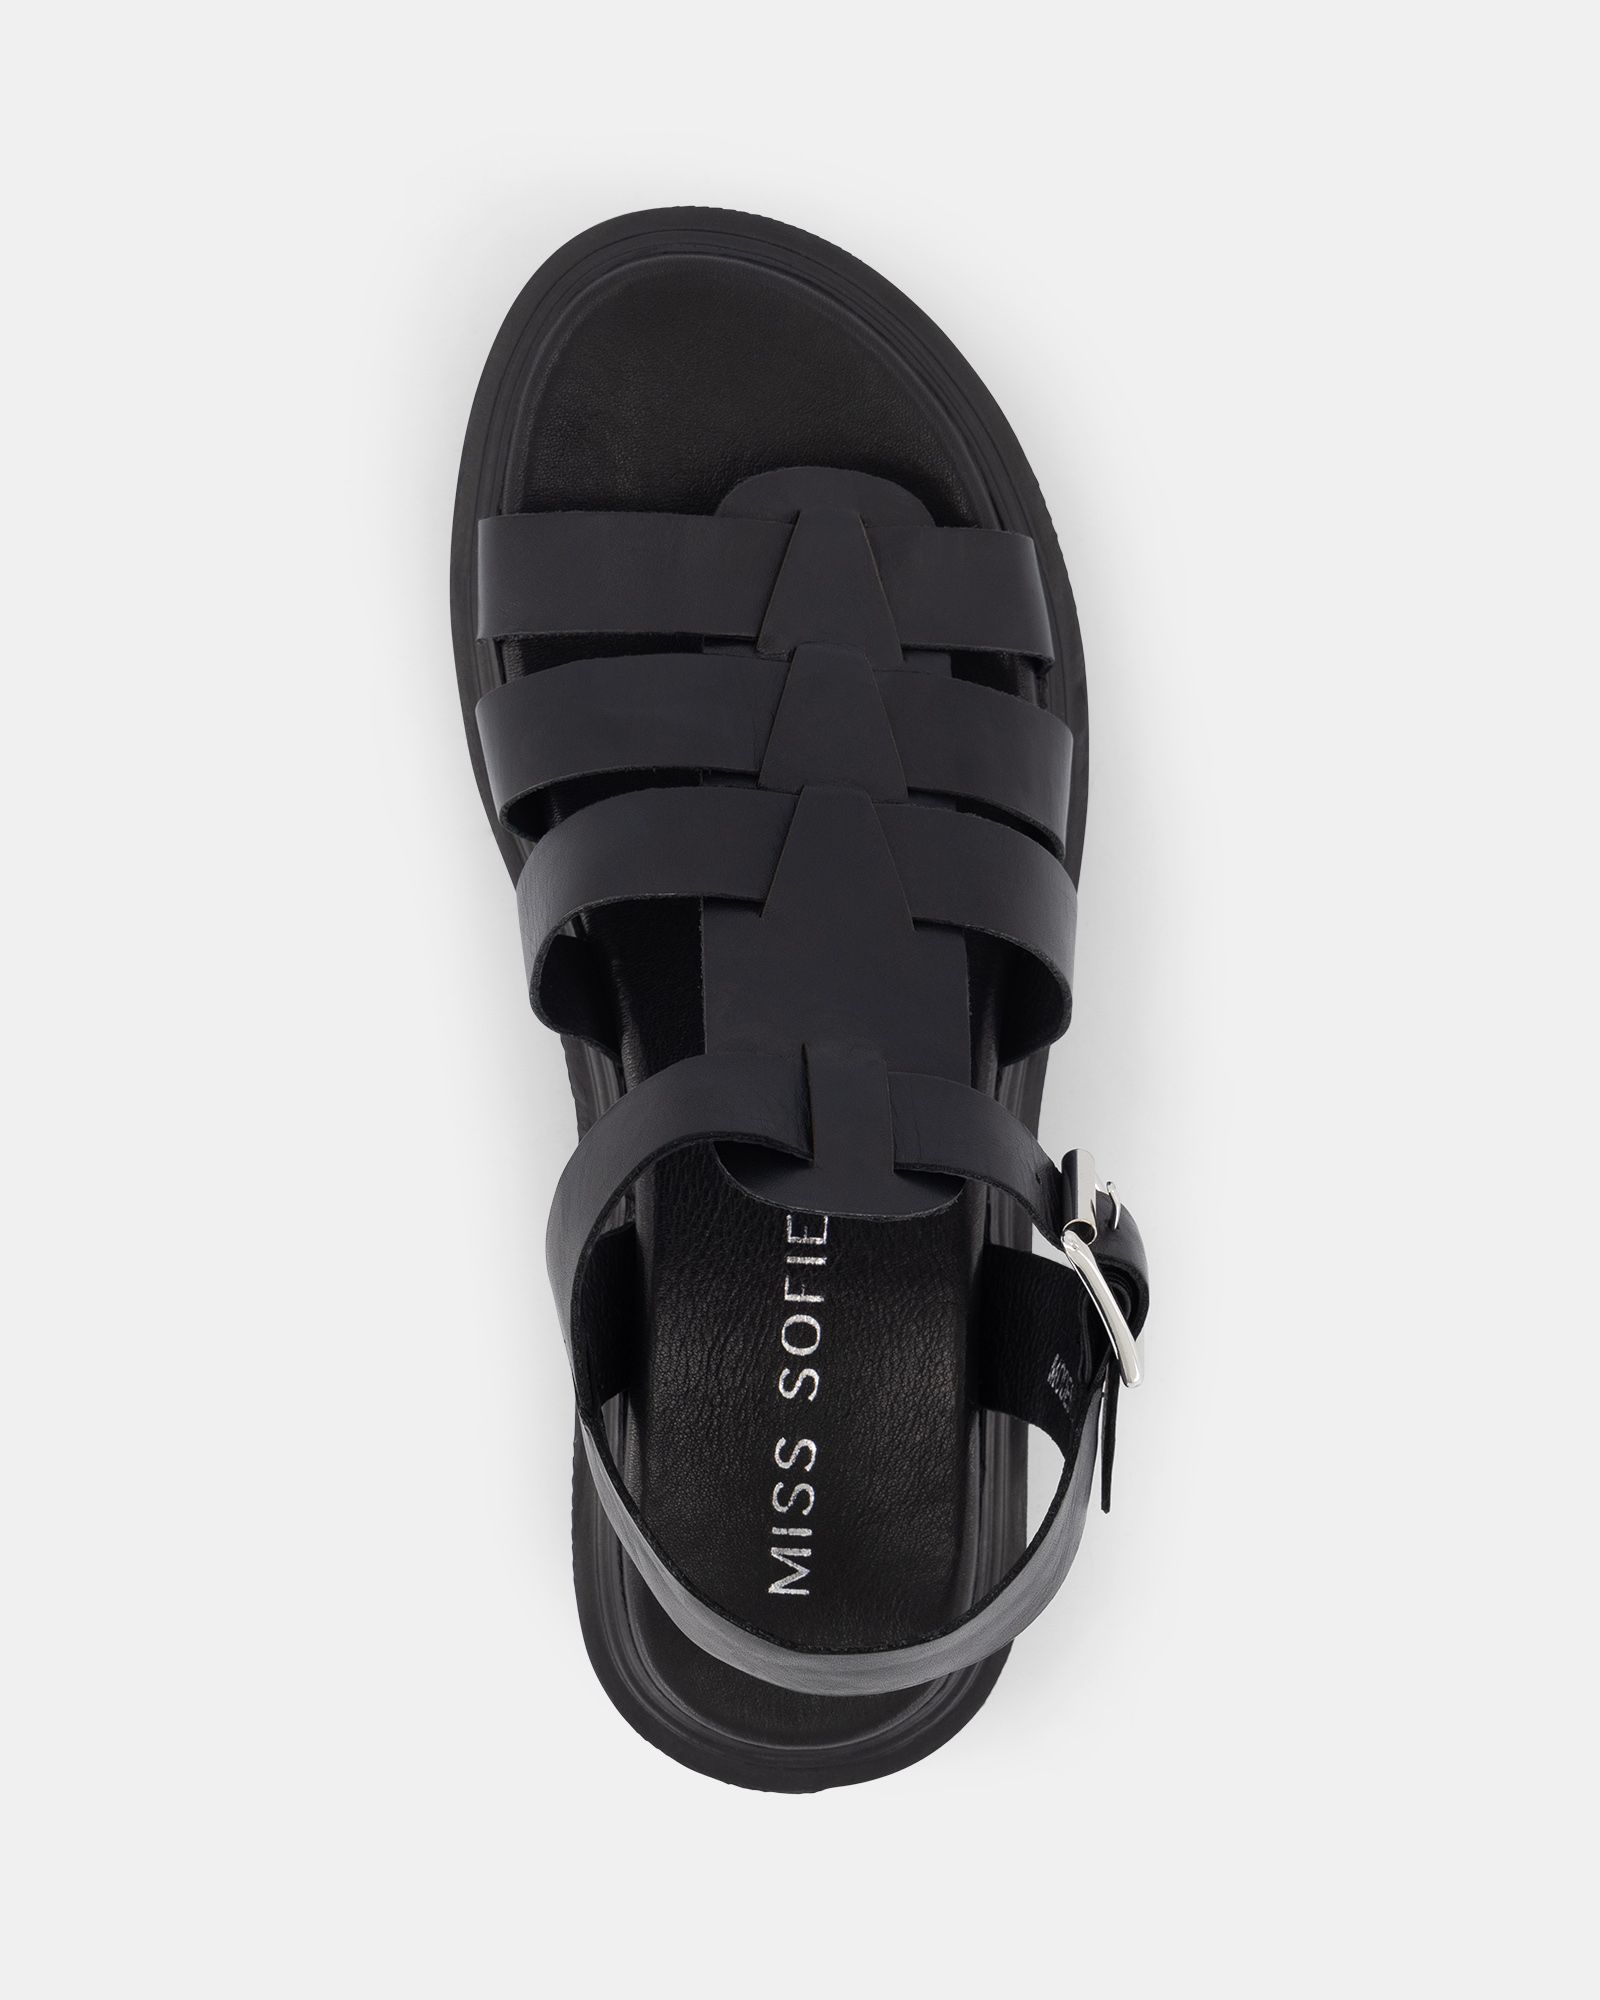 Miss Sofie Modesty Sandals - Black | Shoe Connection AU